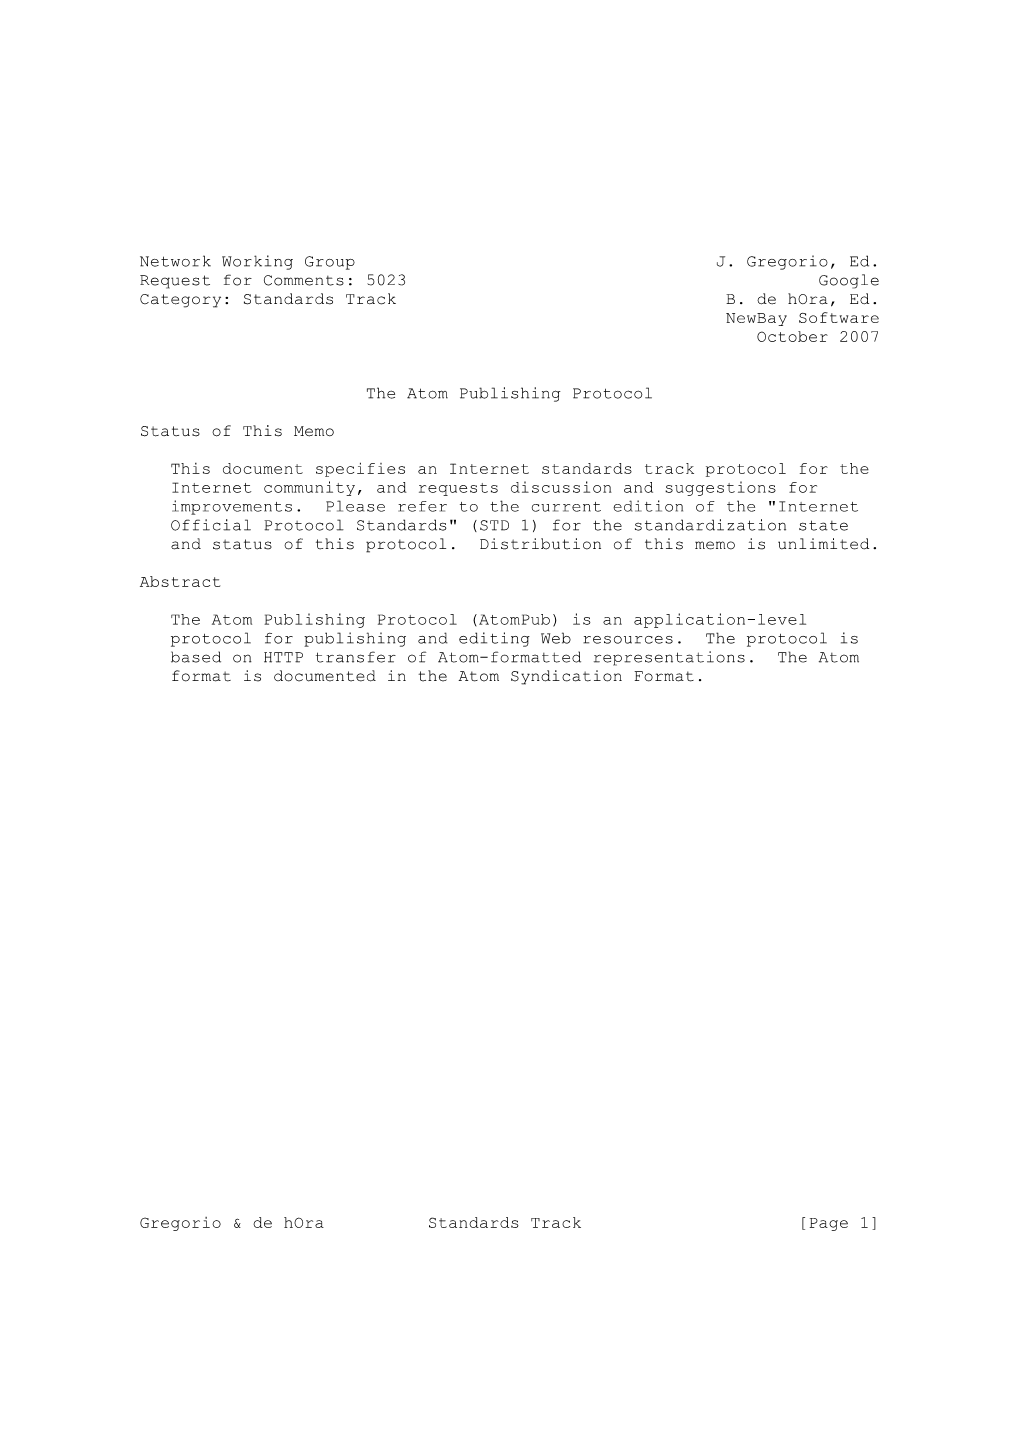 The Atom Publishing Protocol RFC 5023